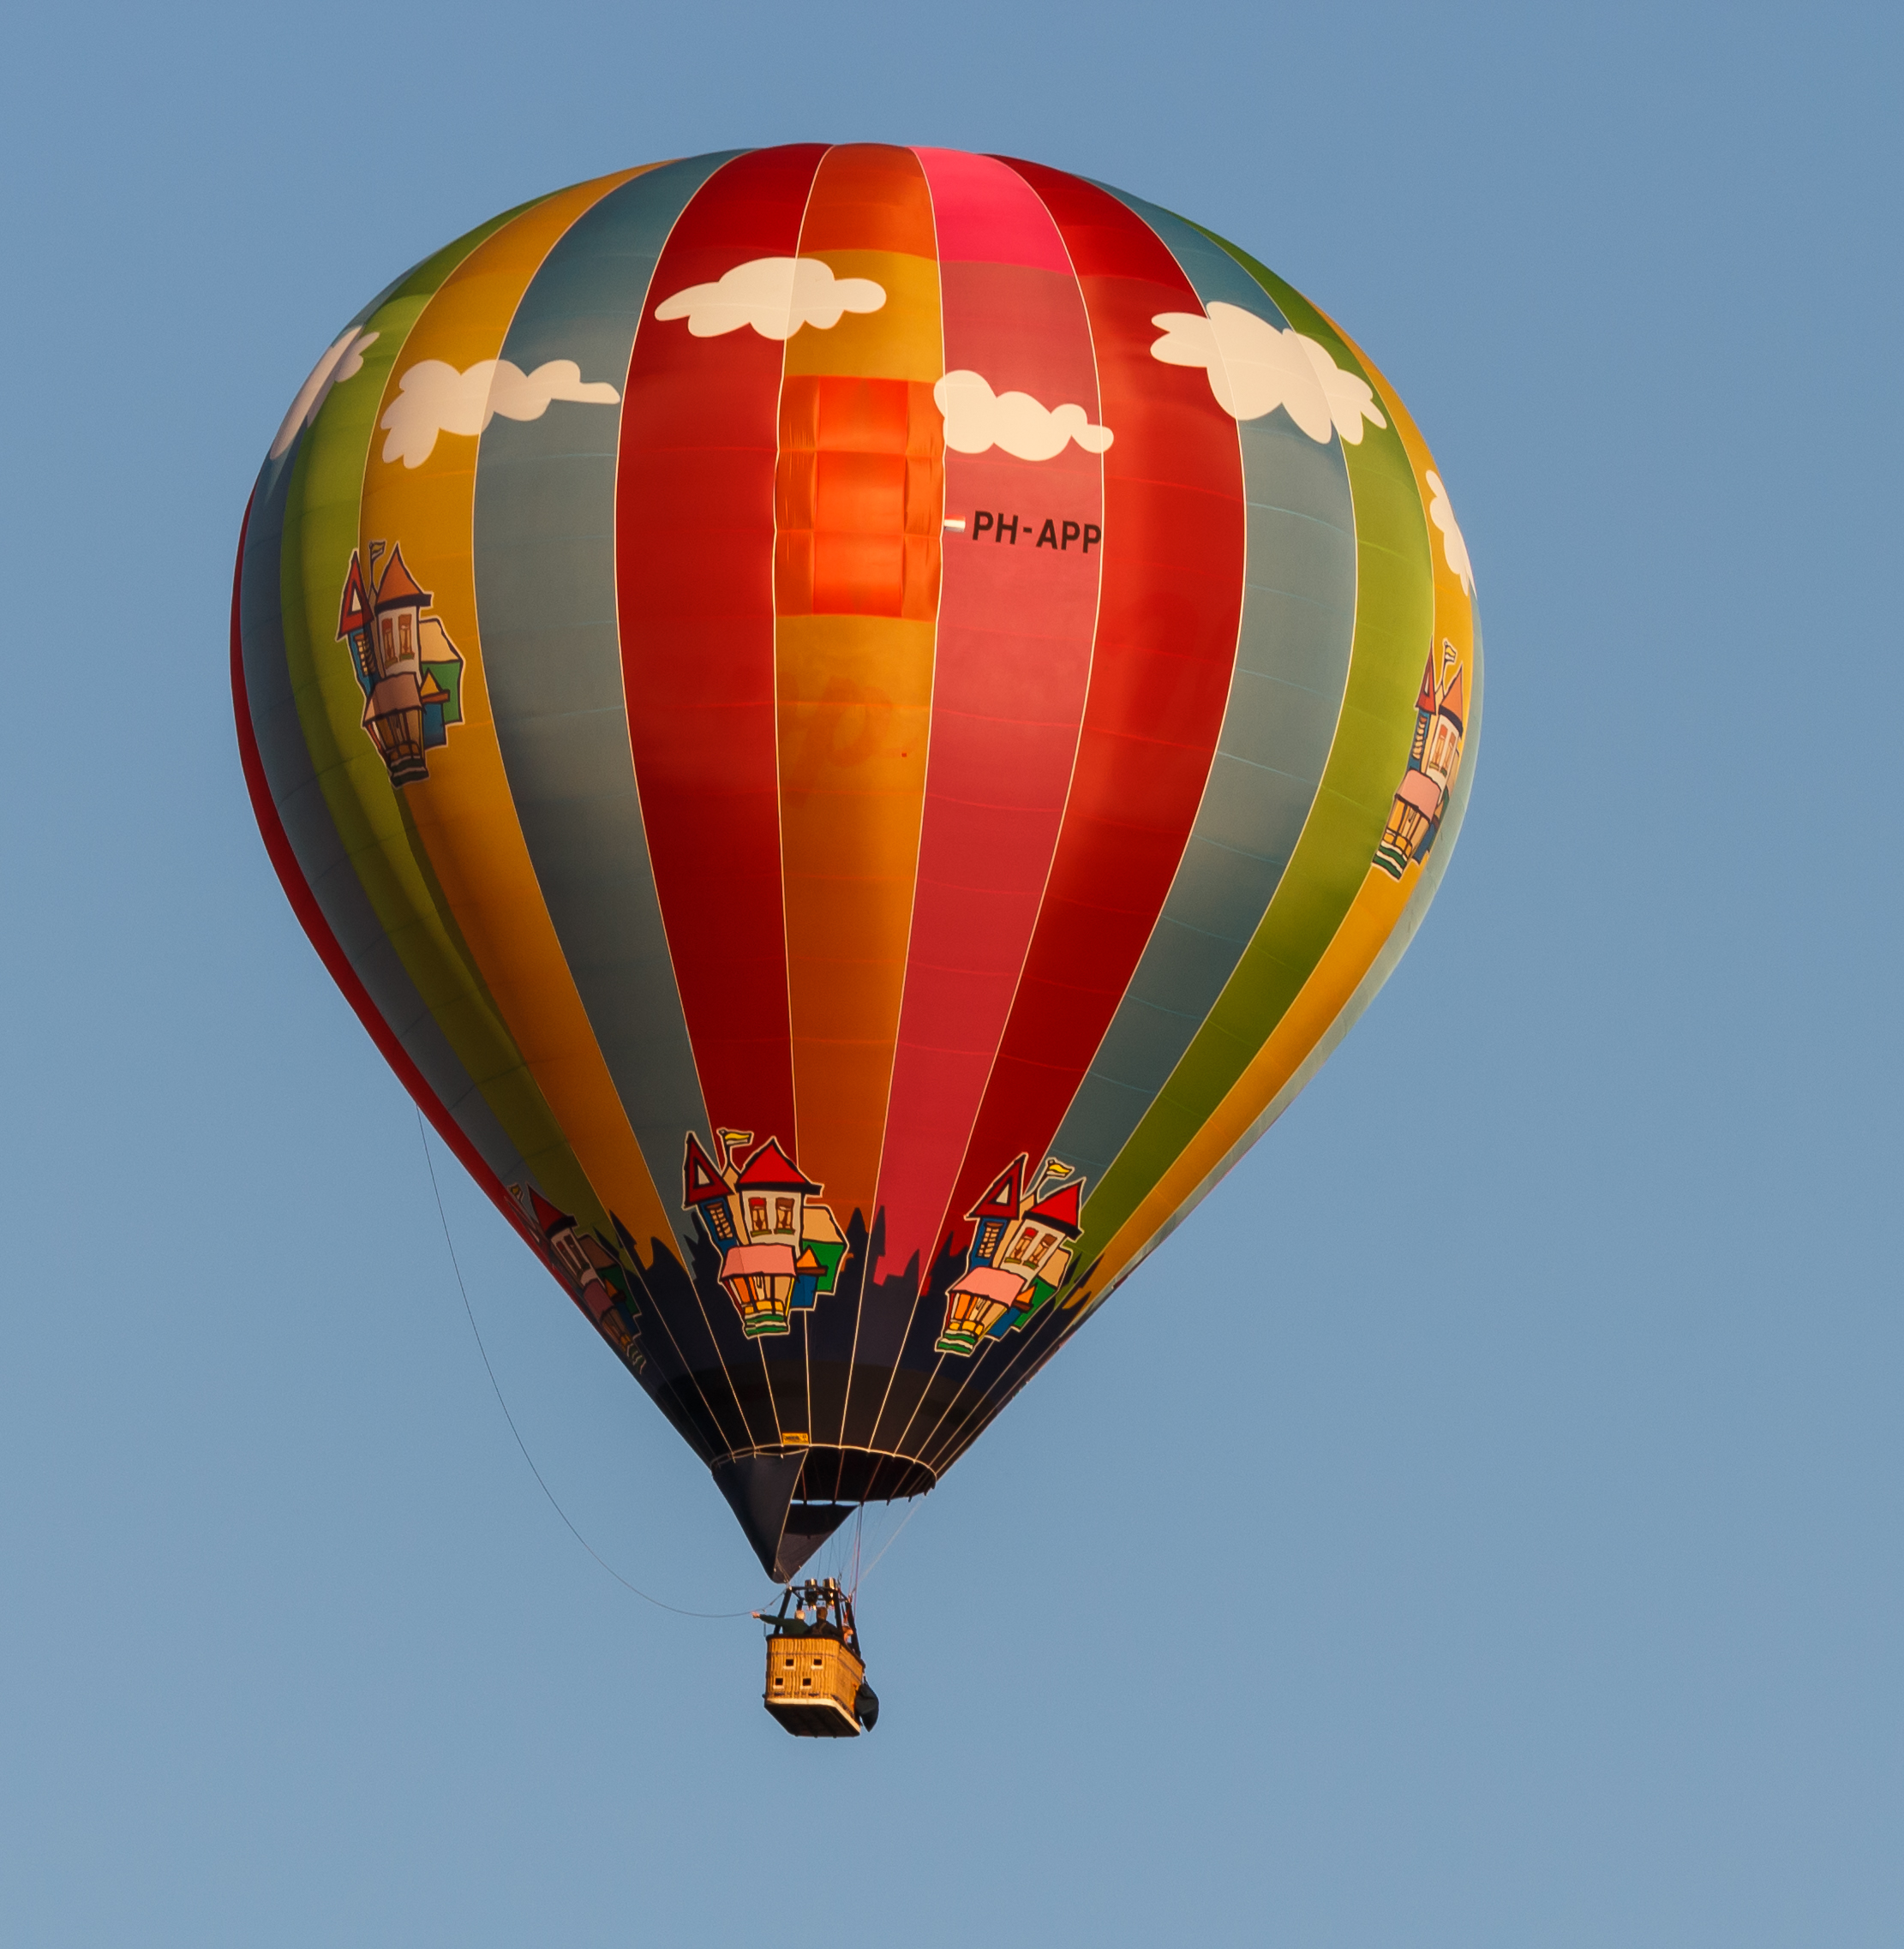 PH-APP ballon op de Jaarlijkse Friese ballonfeesten in Joure 01